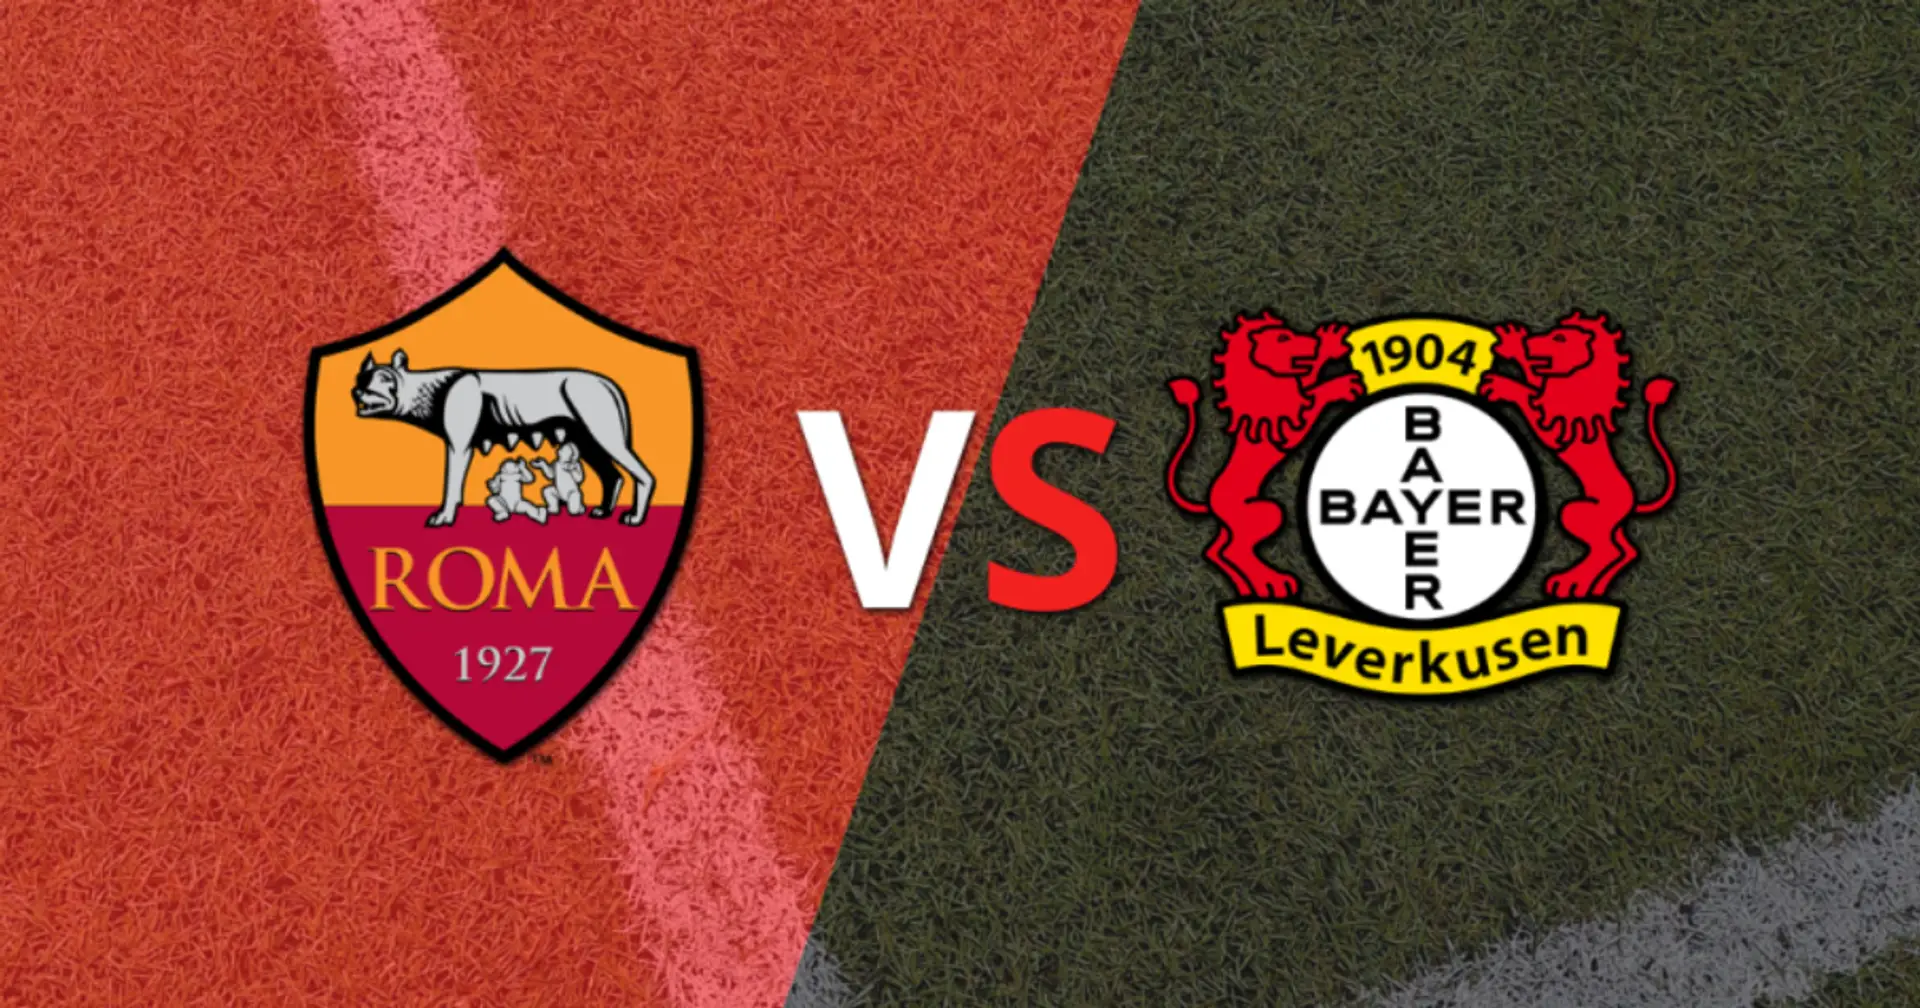 Roma gegen Bayer Leverkusen: Prognose und Tipps für das Spiel am 2. Mai